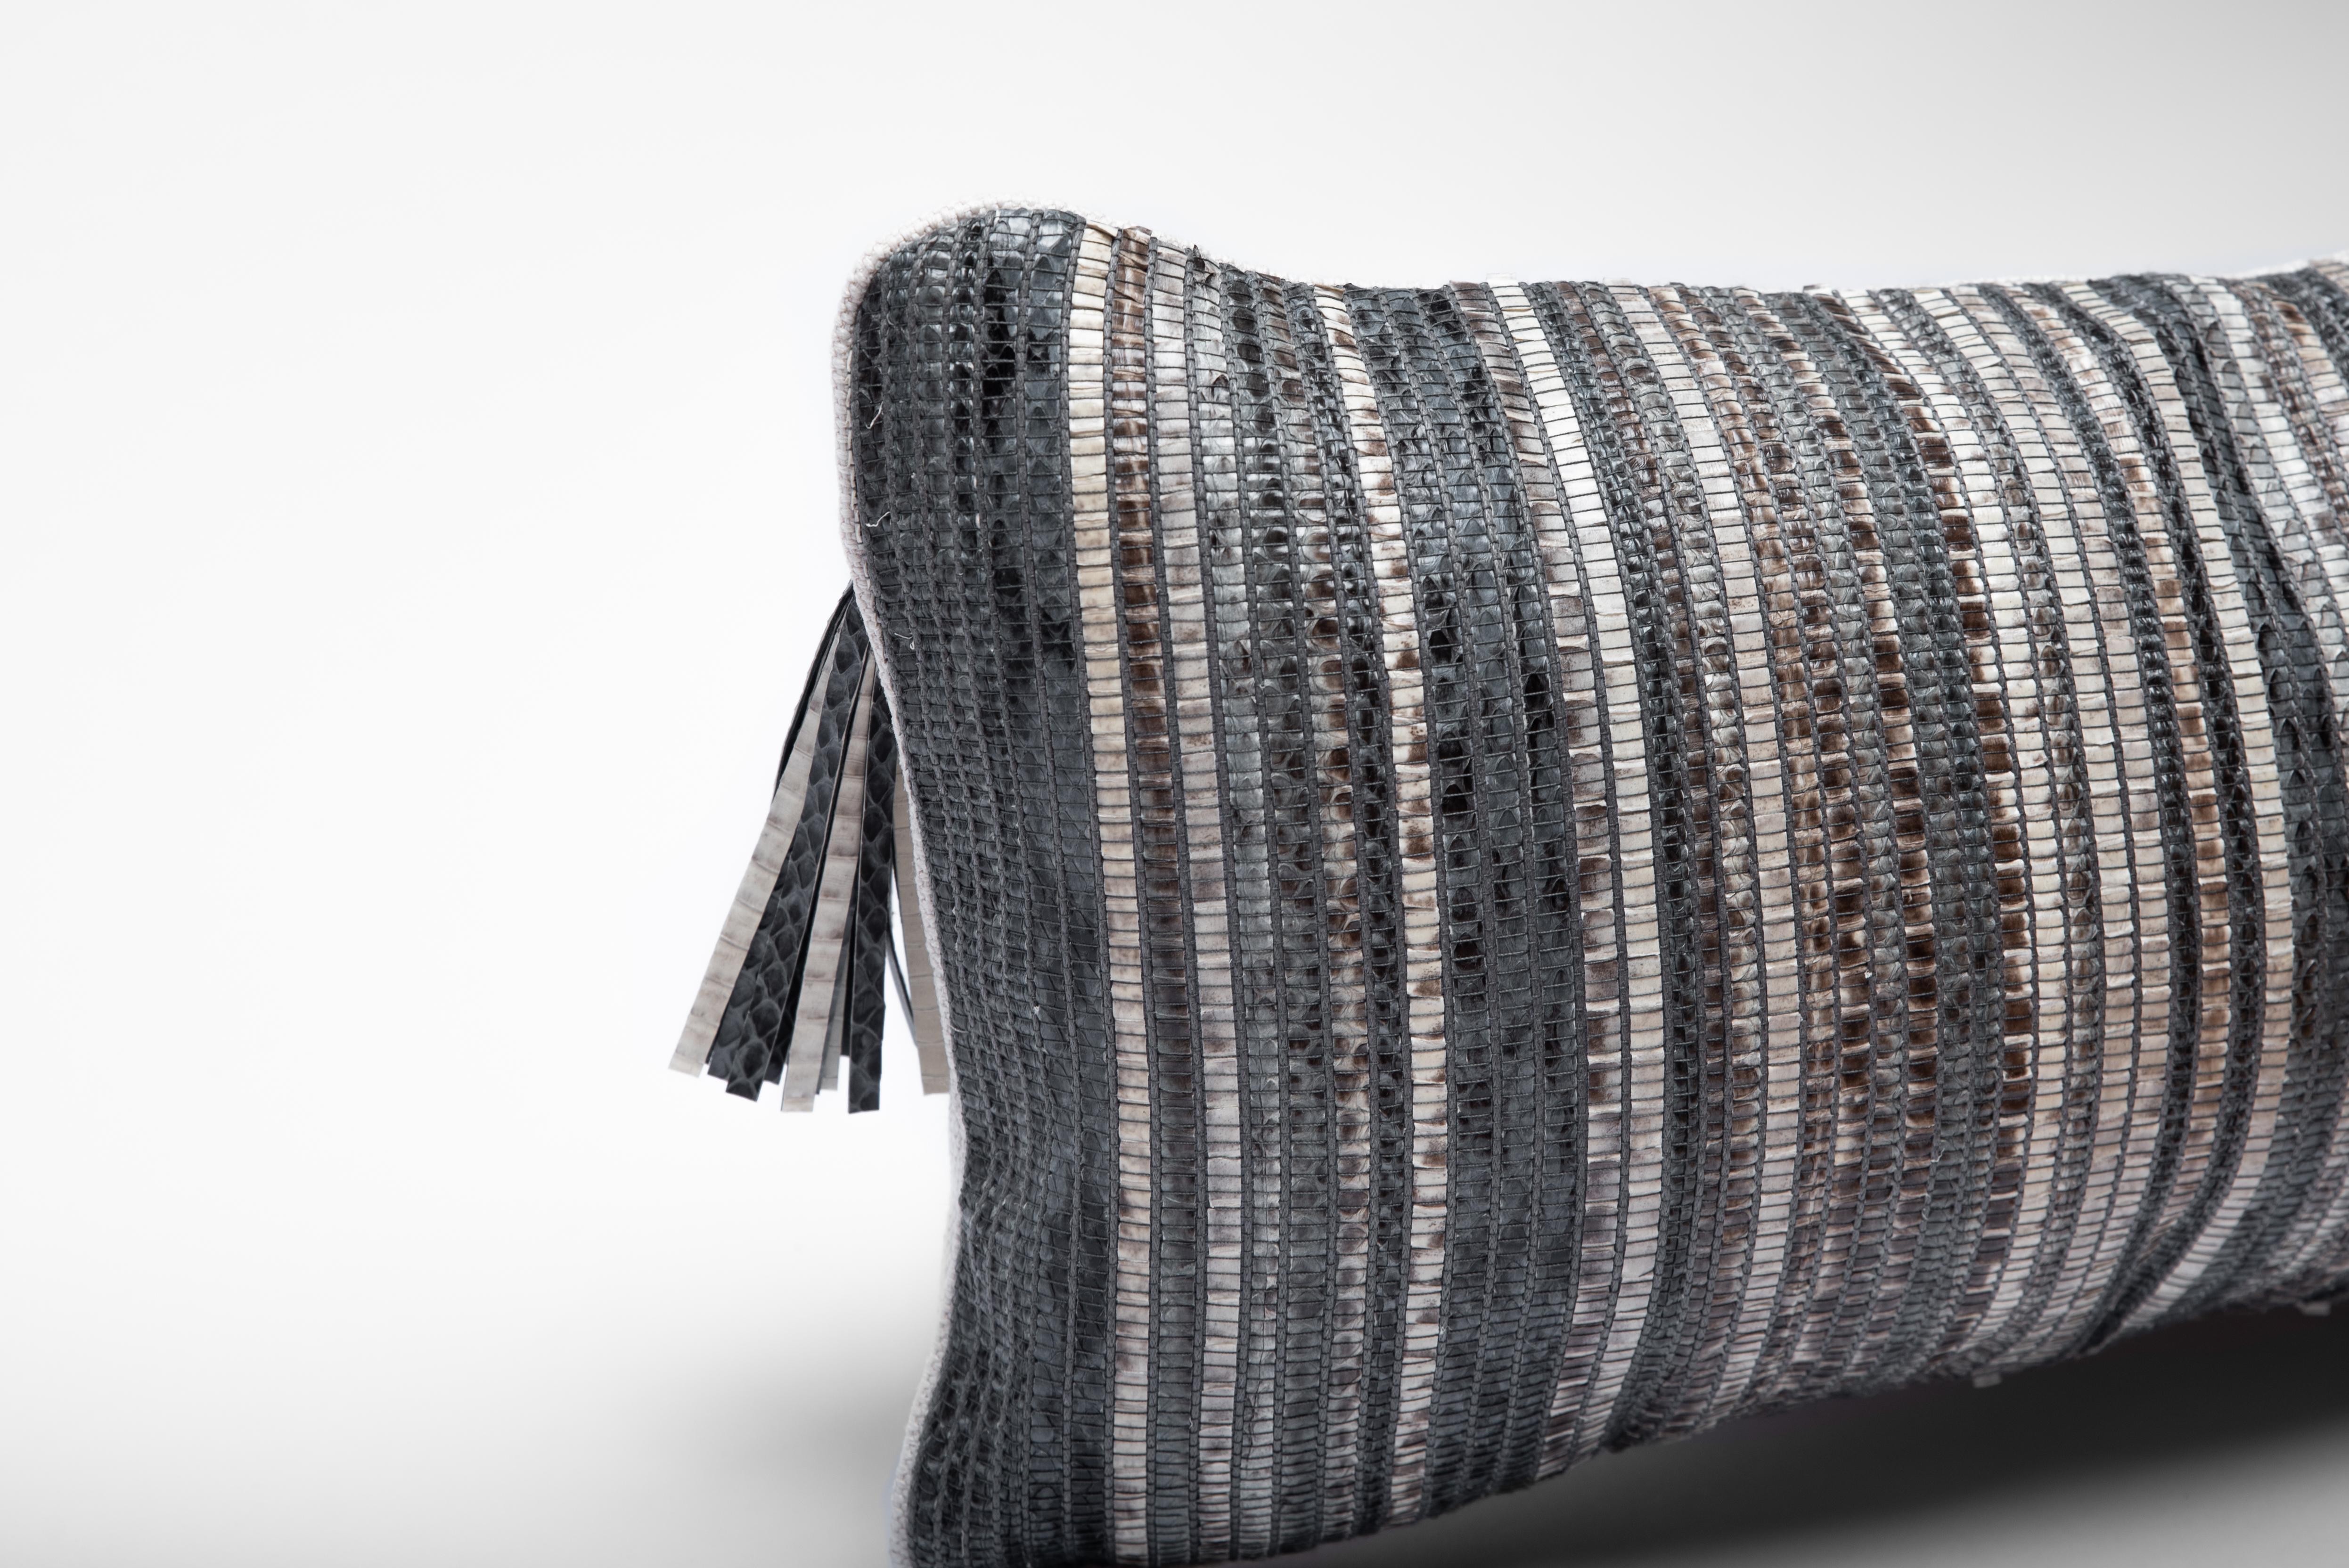 Le coussin en peau de serpent tissée de Kifu, Paris, est la pièce ultime du textile d'intérieur de luxe. Ce textile est unique et original pour la marque, qui utilise des techniques de tissage traditionnelles avec des métiers à bois pour développer